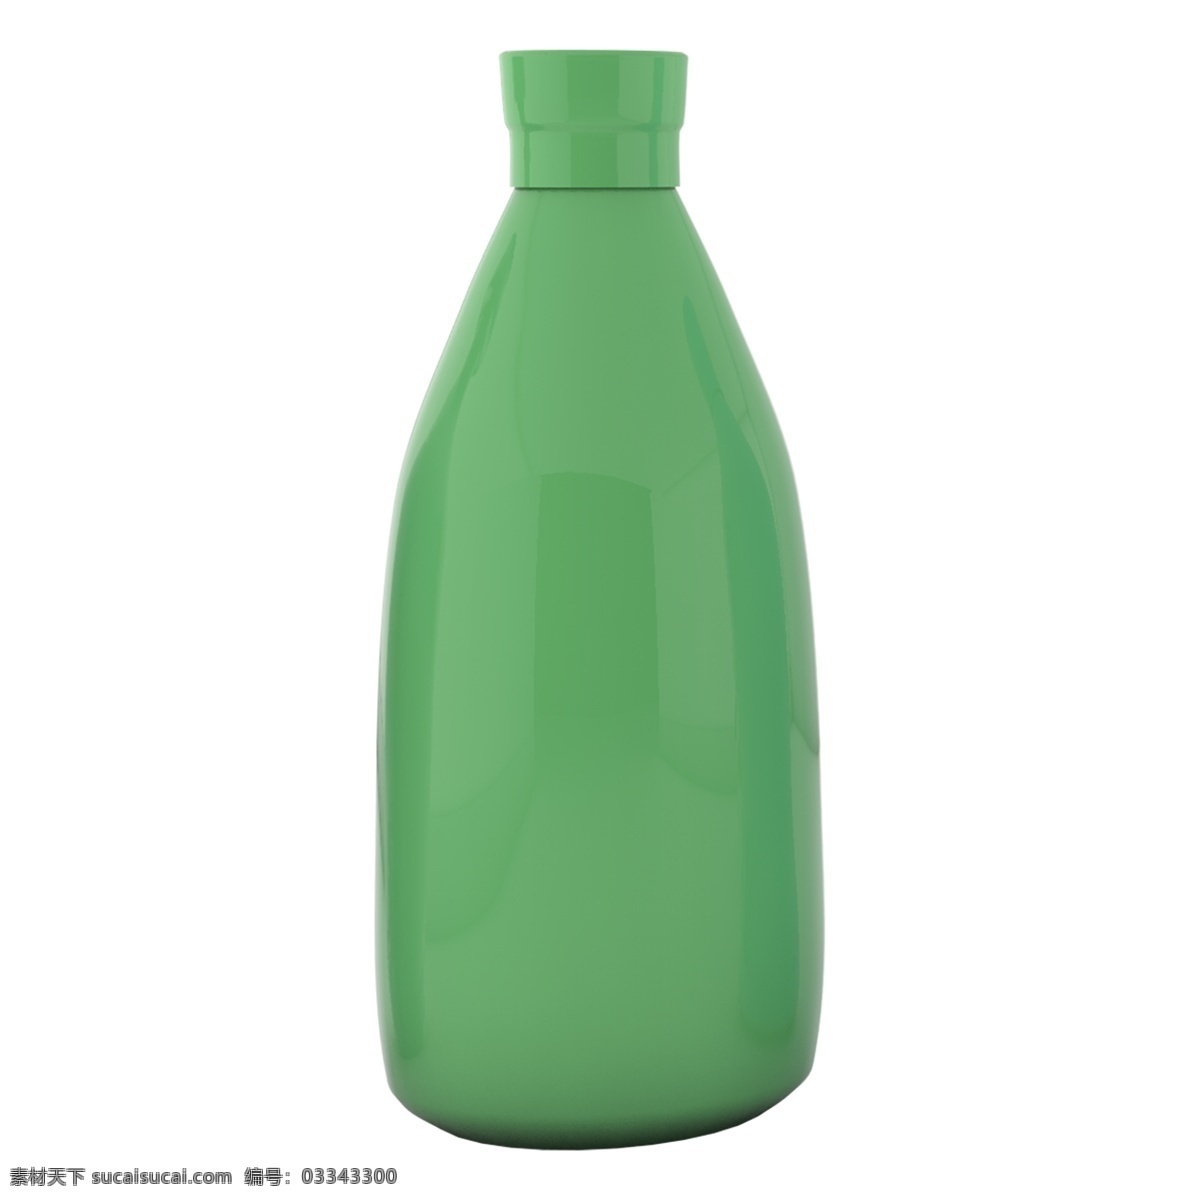 个性 花纹 艺术 装饰 瓶子 生活用品 绿色 摆件 元素 绿色摆件 个性花纹 艺术装饰